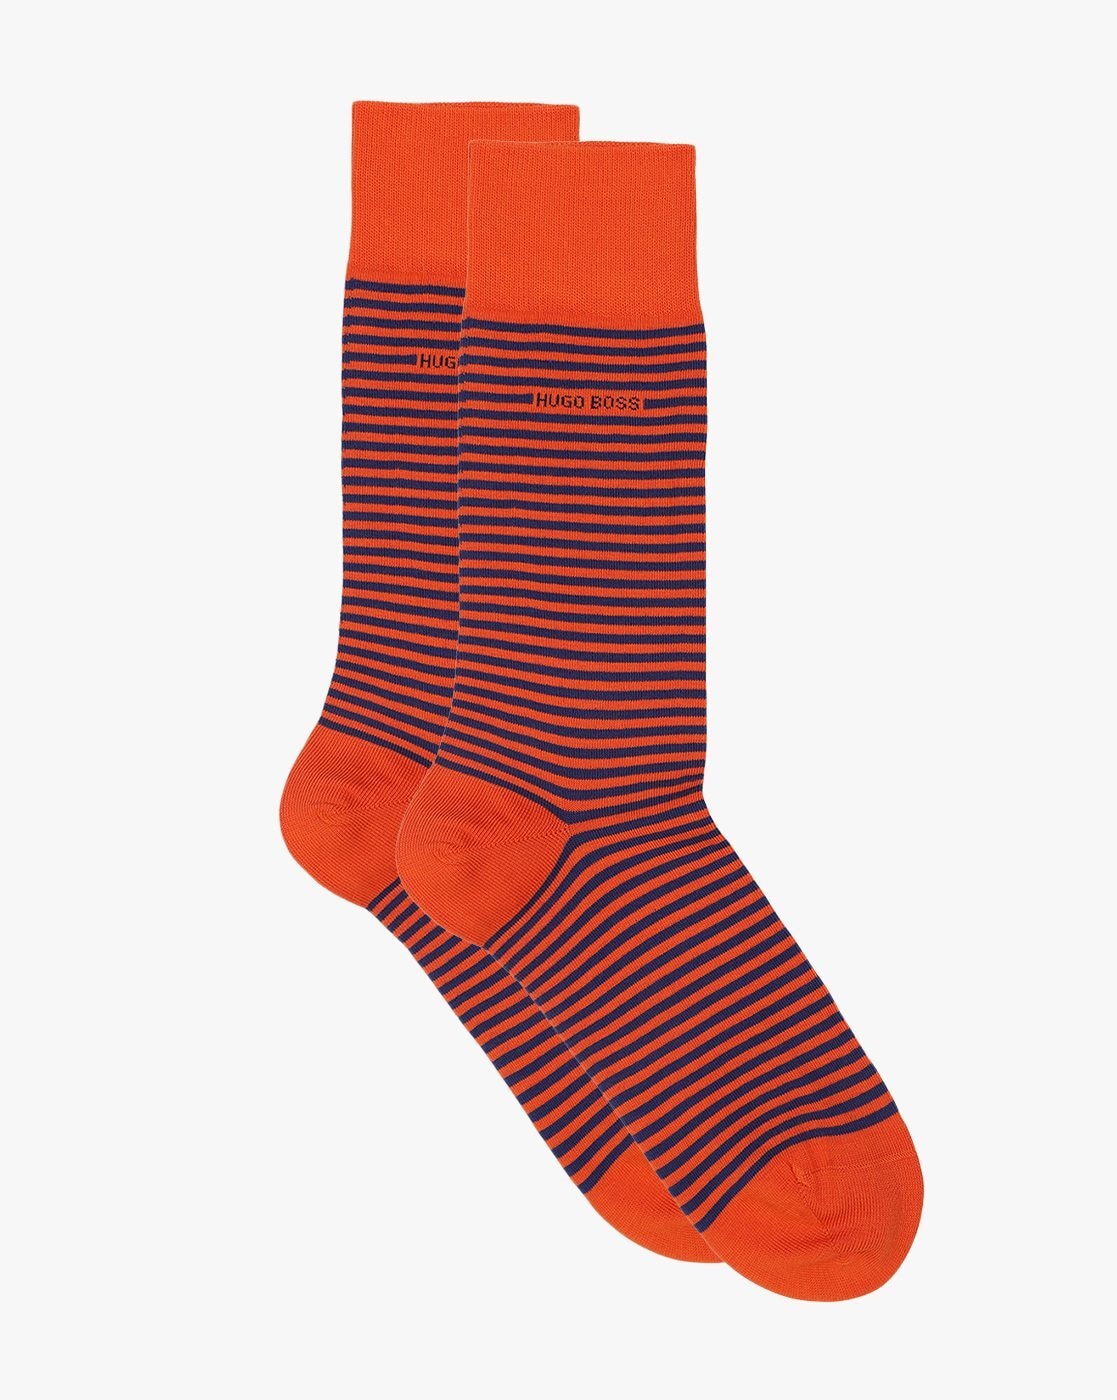 Bekræftelse Grundlægger sø Buy Orange Socks for Men by HUGO BOSS Online | Ajio.com